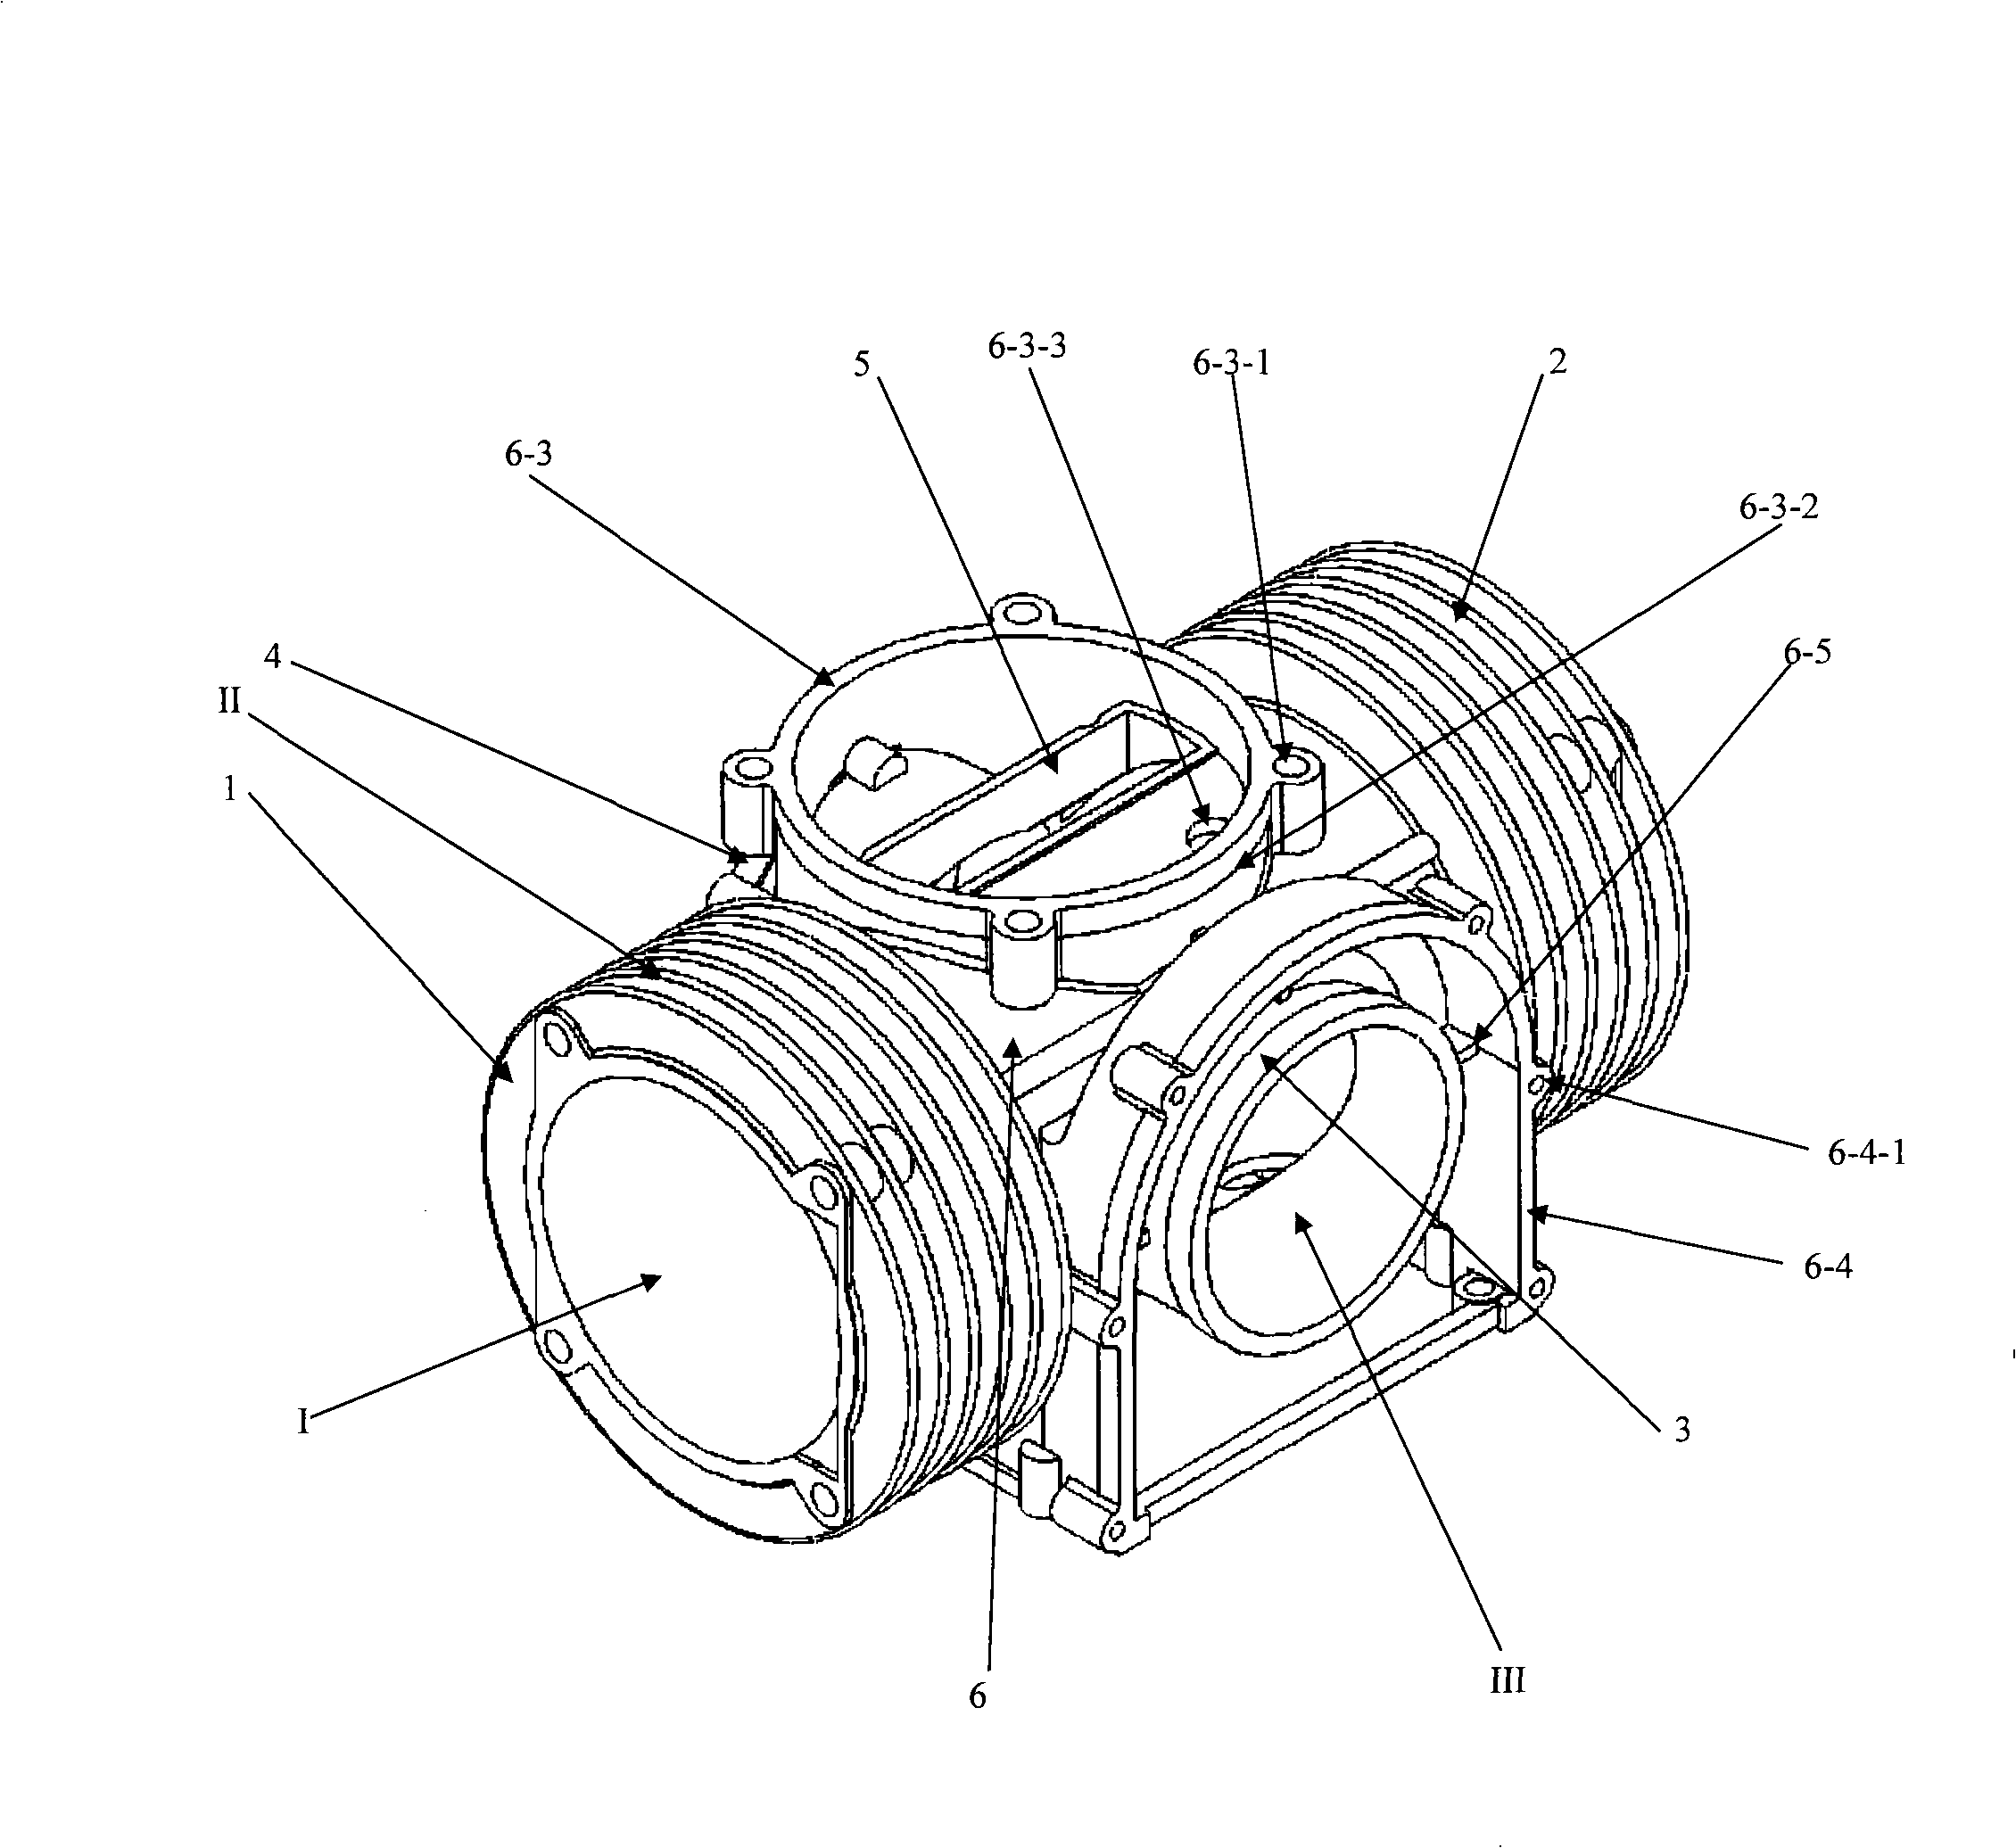 Reciprocating-piston compressor body